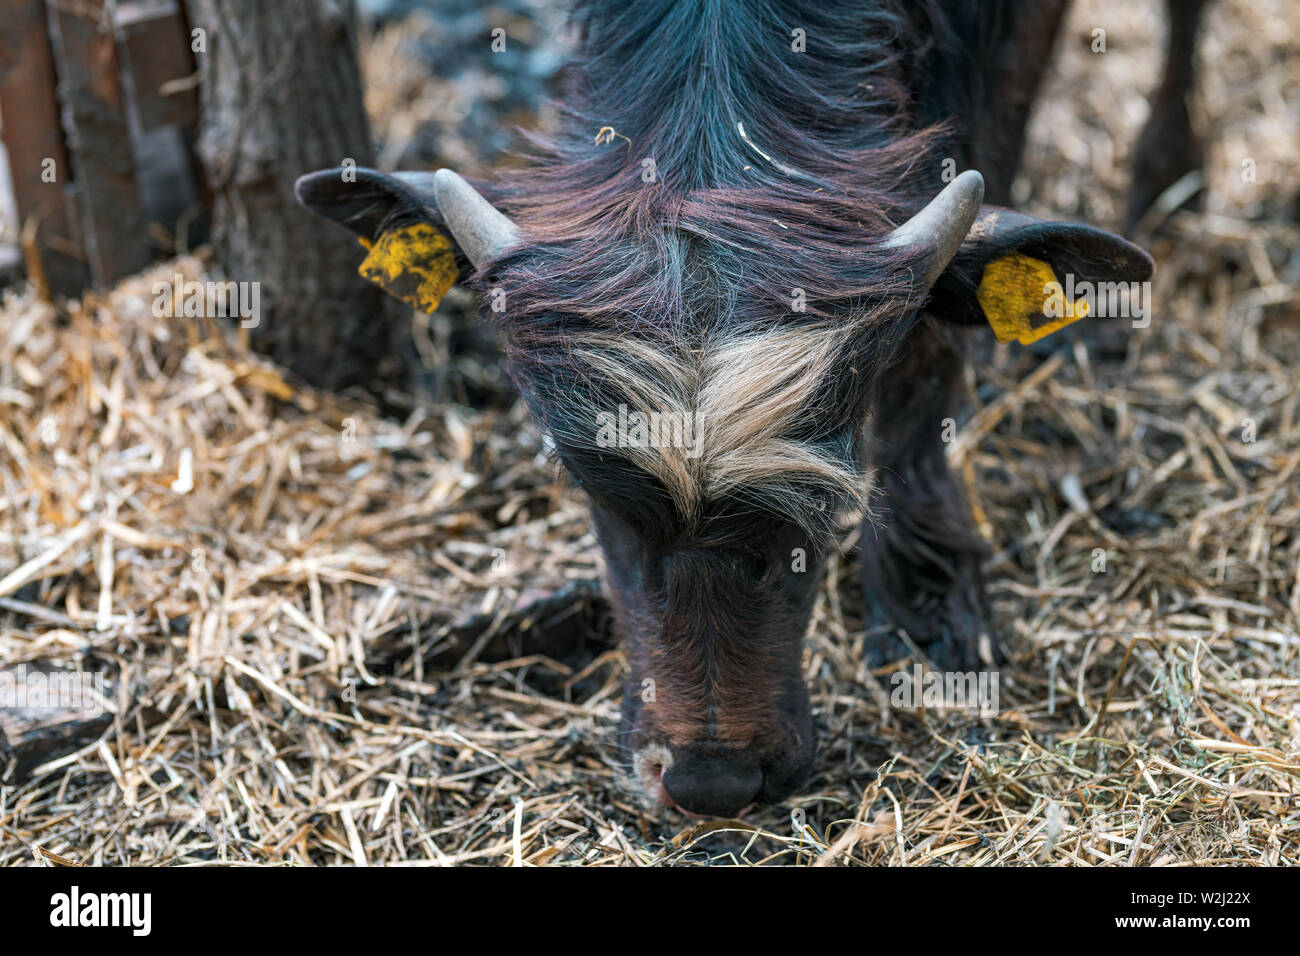 Bufala nel paddock, il bestiame di allevamento degli animali Foto Stock